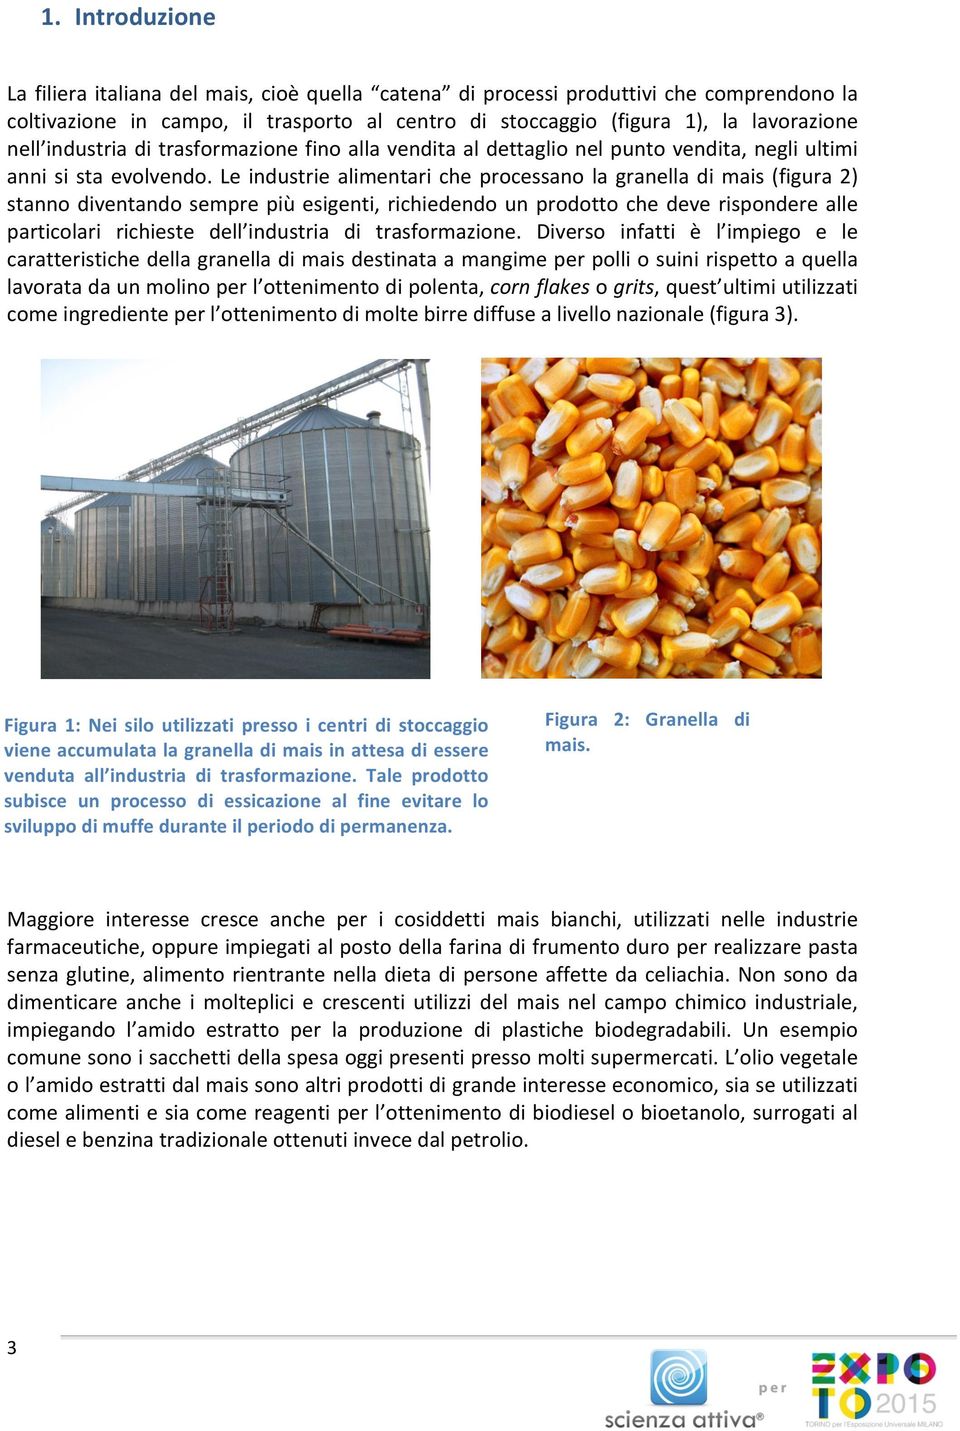 Le industrie alimentari che processano la granella di mais (figura 2) stanno diventando sempre più esigenti, richiedendo un prodotto che deve rispondere alle particolari richieste dell industria di